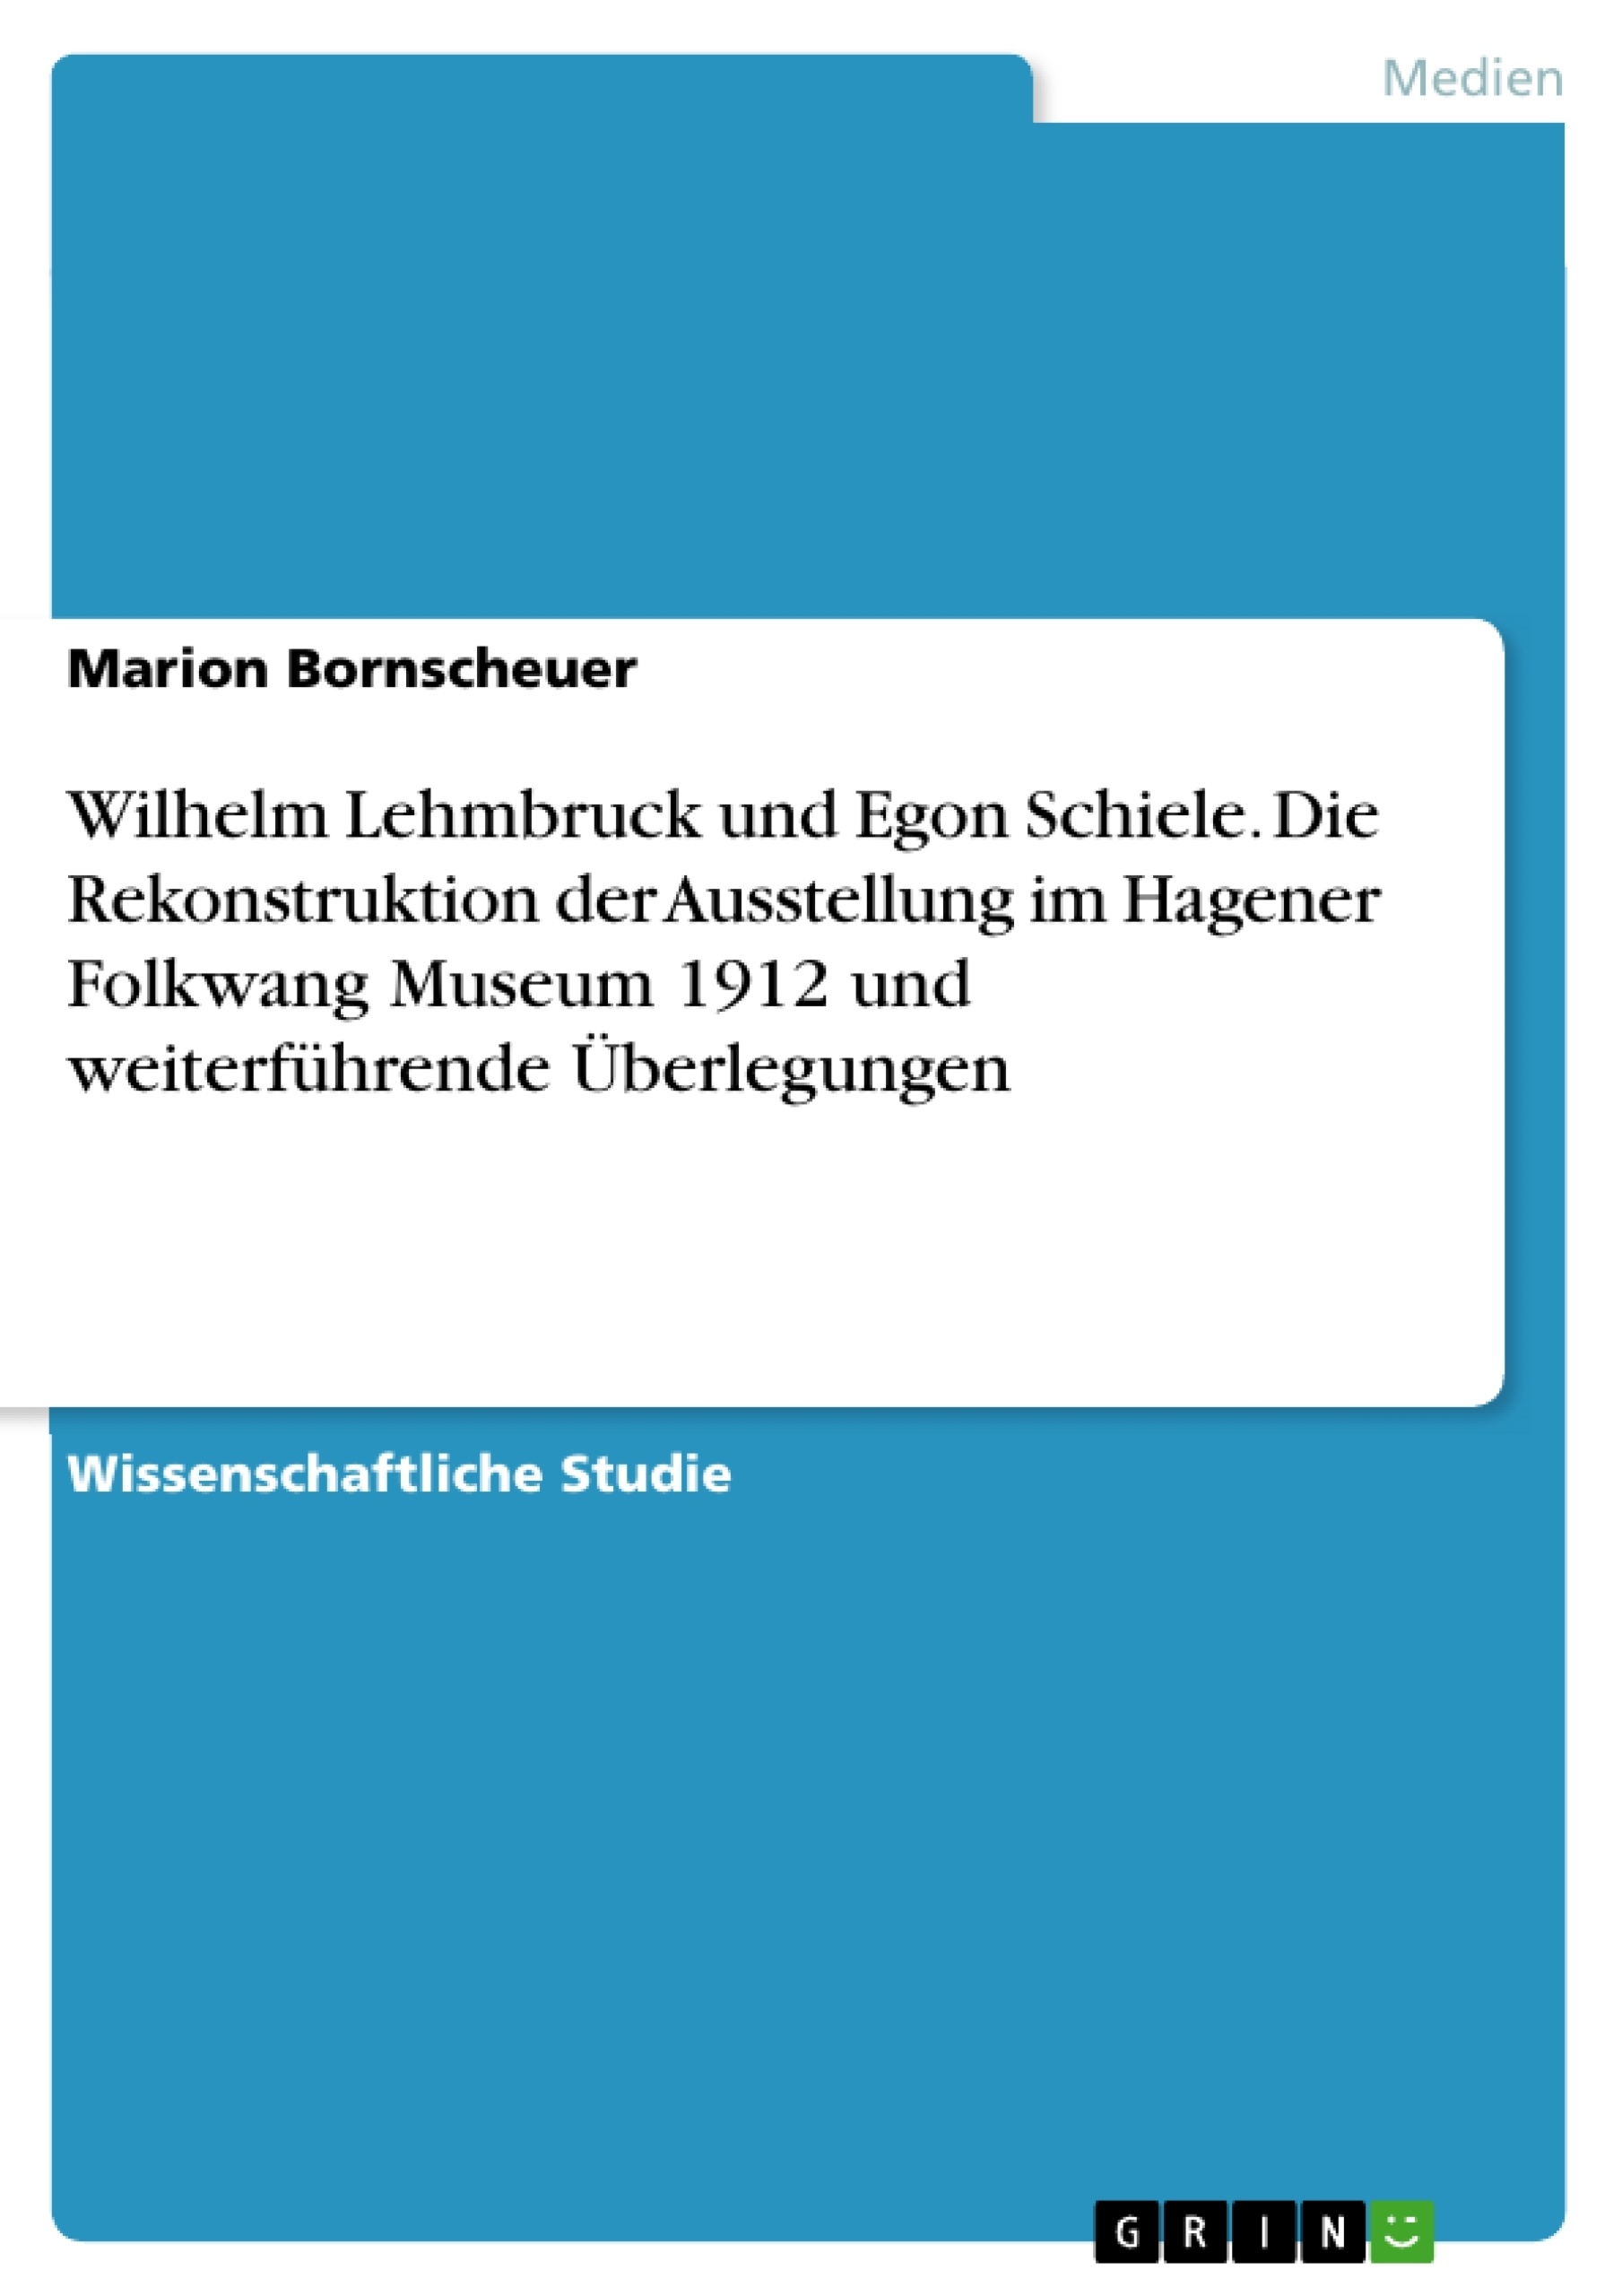 Título: Wilhelm Lehmbruck und Egon Schiele. Die Rekonstruktion der Ausstellung im Hagener Folkwang Museum 1912 und weiterführende Überlegungen